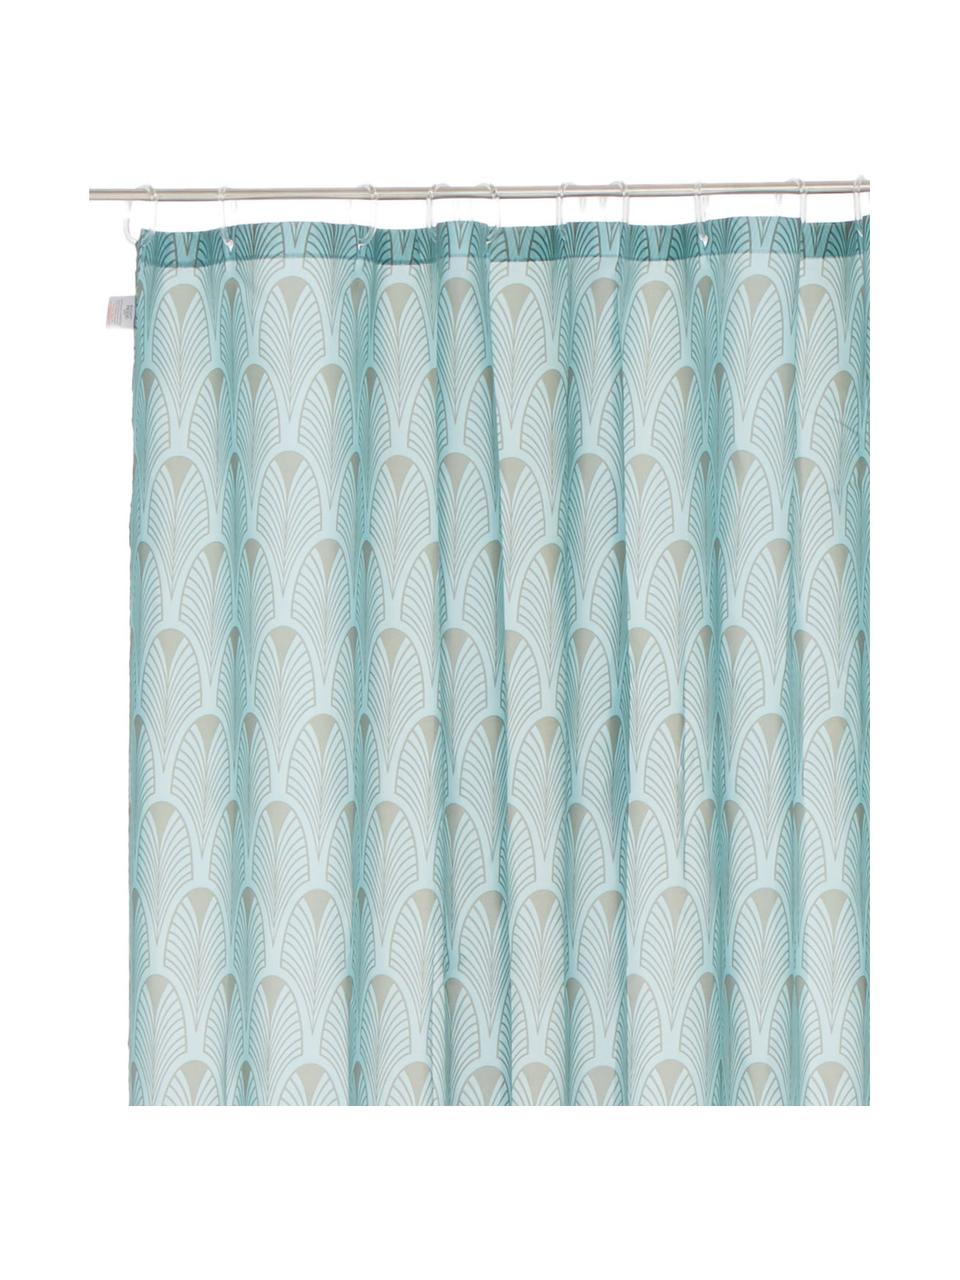 Douchegordijn Ashville met Art decoratieve patroon, 100% polyester, digital bedrukt
Waterafstotend, niet waterdicht, Mintblauw, grijs, 180 x 200 cm